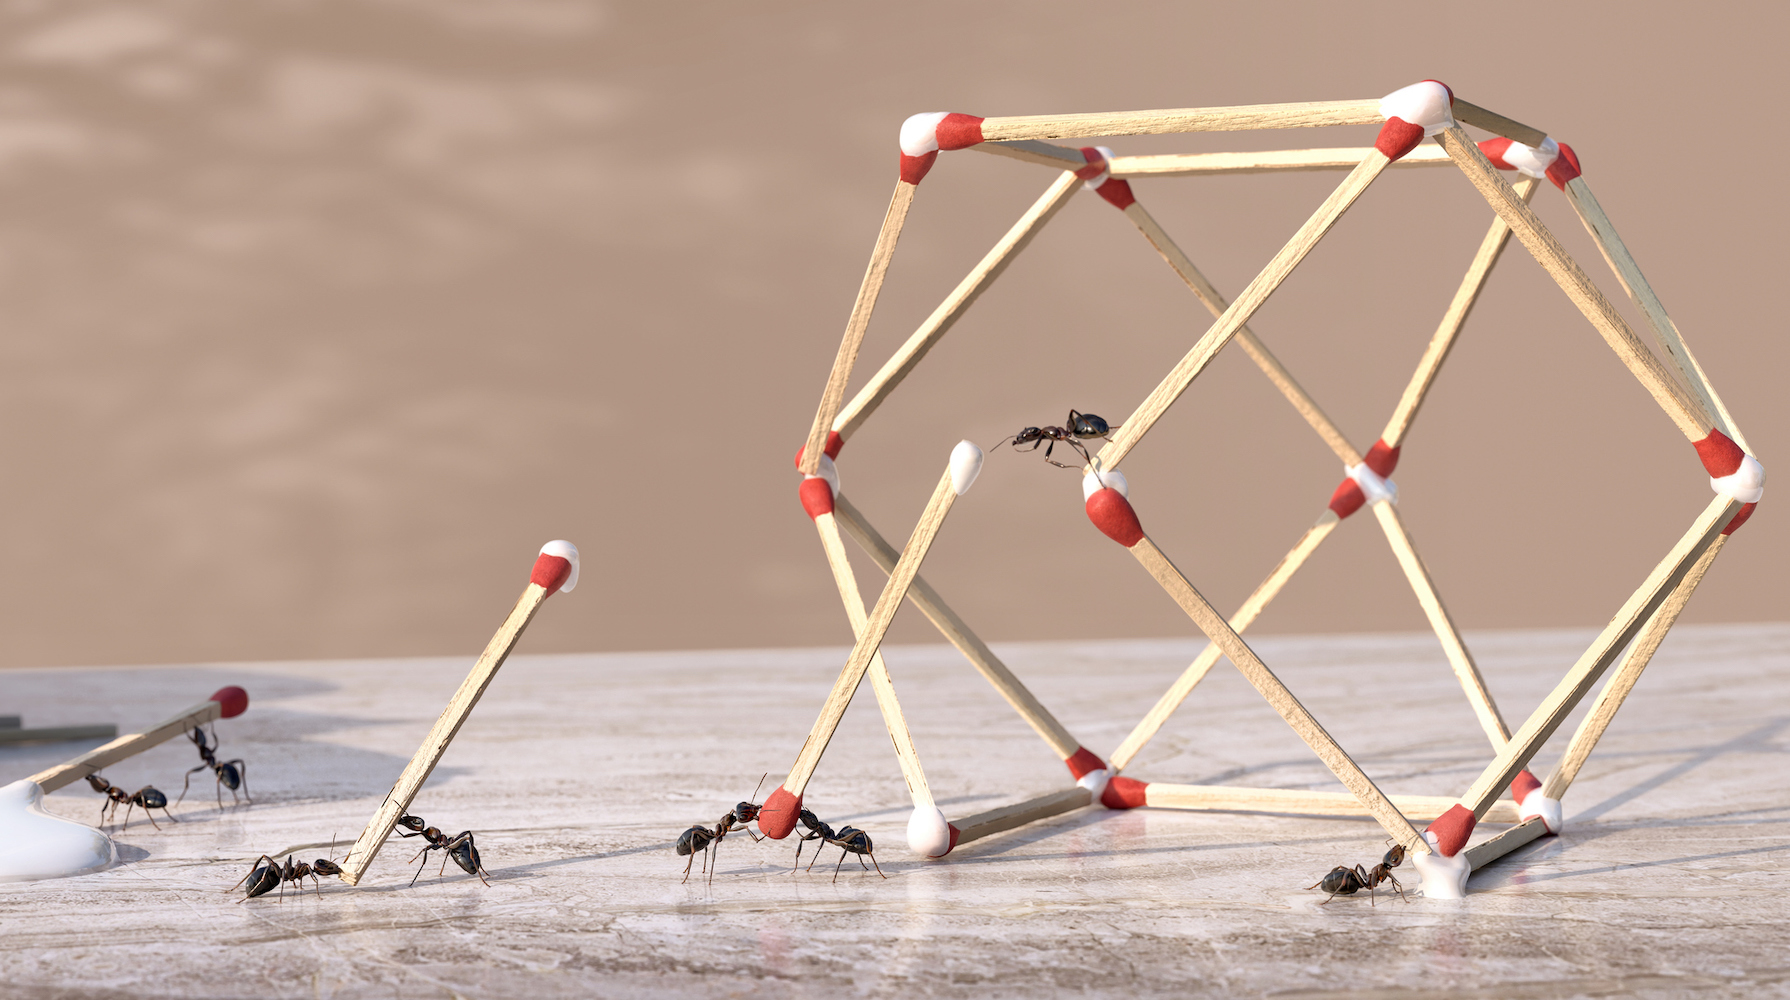 一群蚂蚁以团队合作的方式用胶水和火柴棍形成一个三维几何雕塑。蚂蚁是火柴棒的末端，胶水从一瓶胶水滴落，并放置在大理石台面上形成形状。